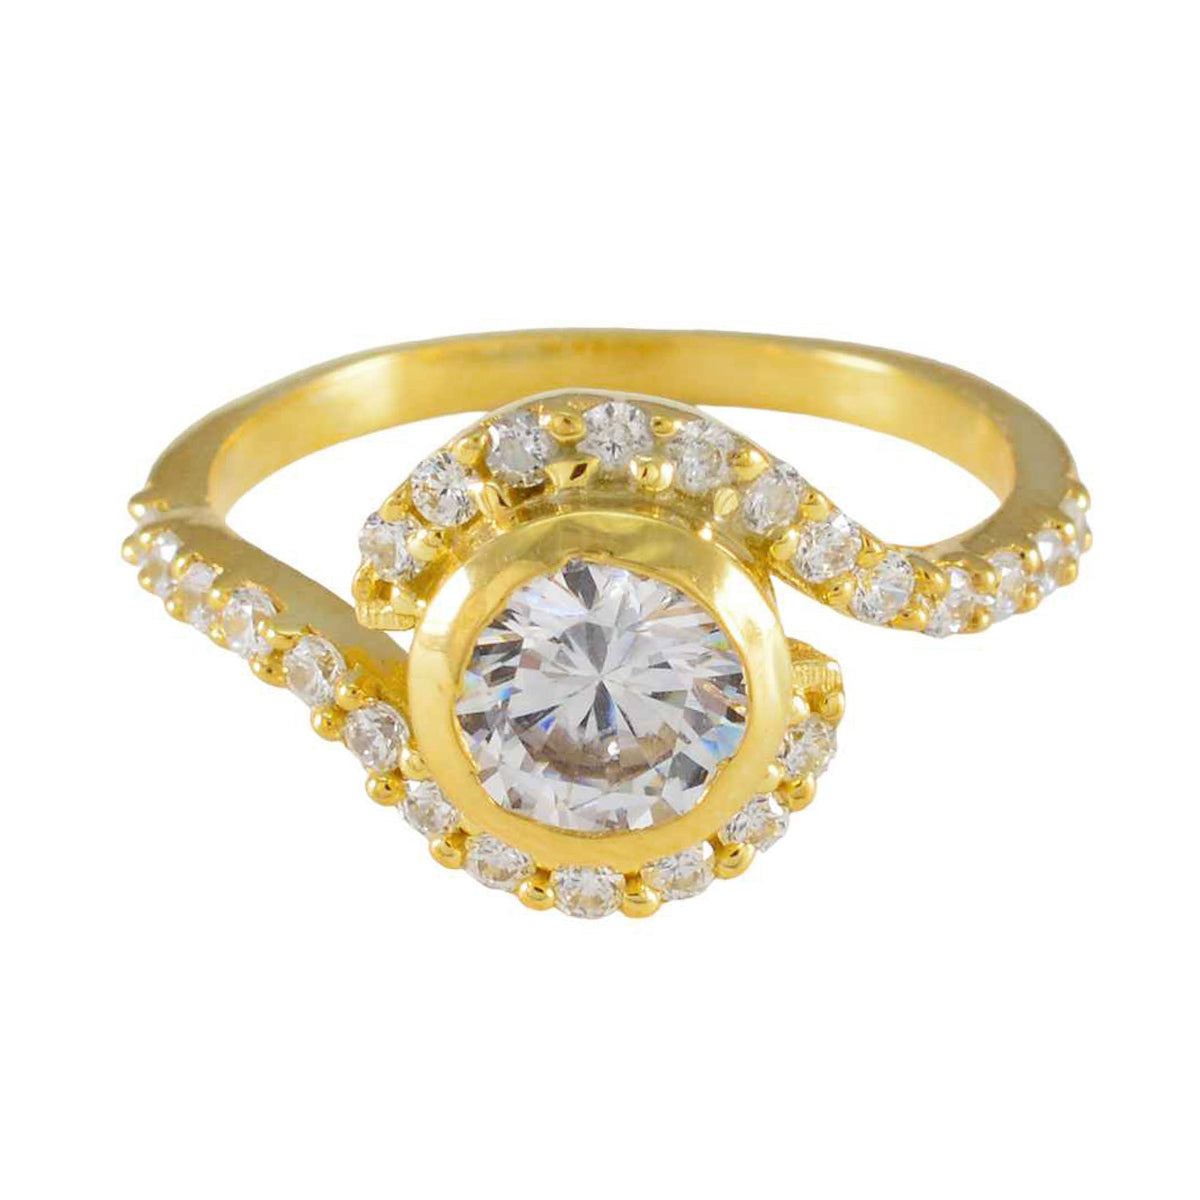 Riyo Uitgebreide zilveren ring met geelgouden witte CZ-steen Ronde vorm Prong Setting Bruidssieraden Verjaardagsring